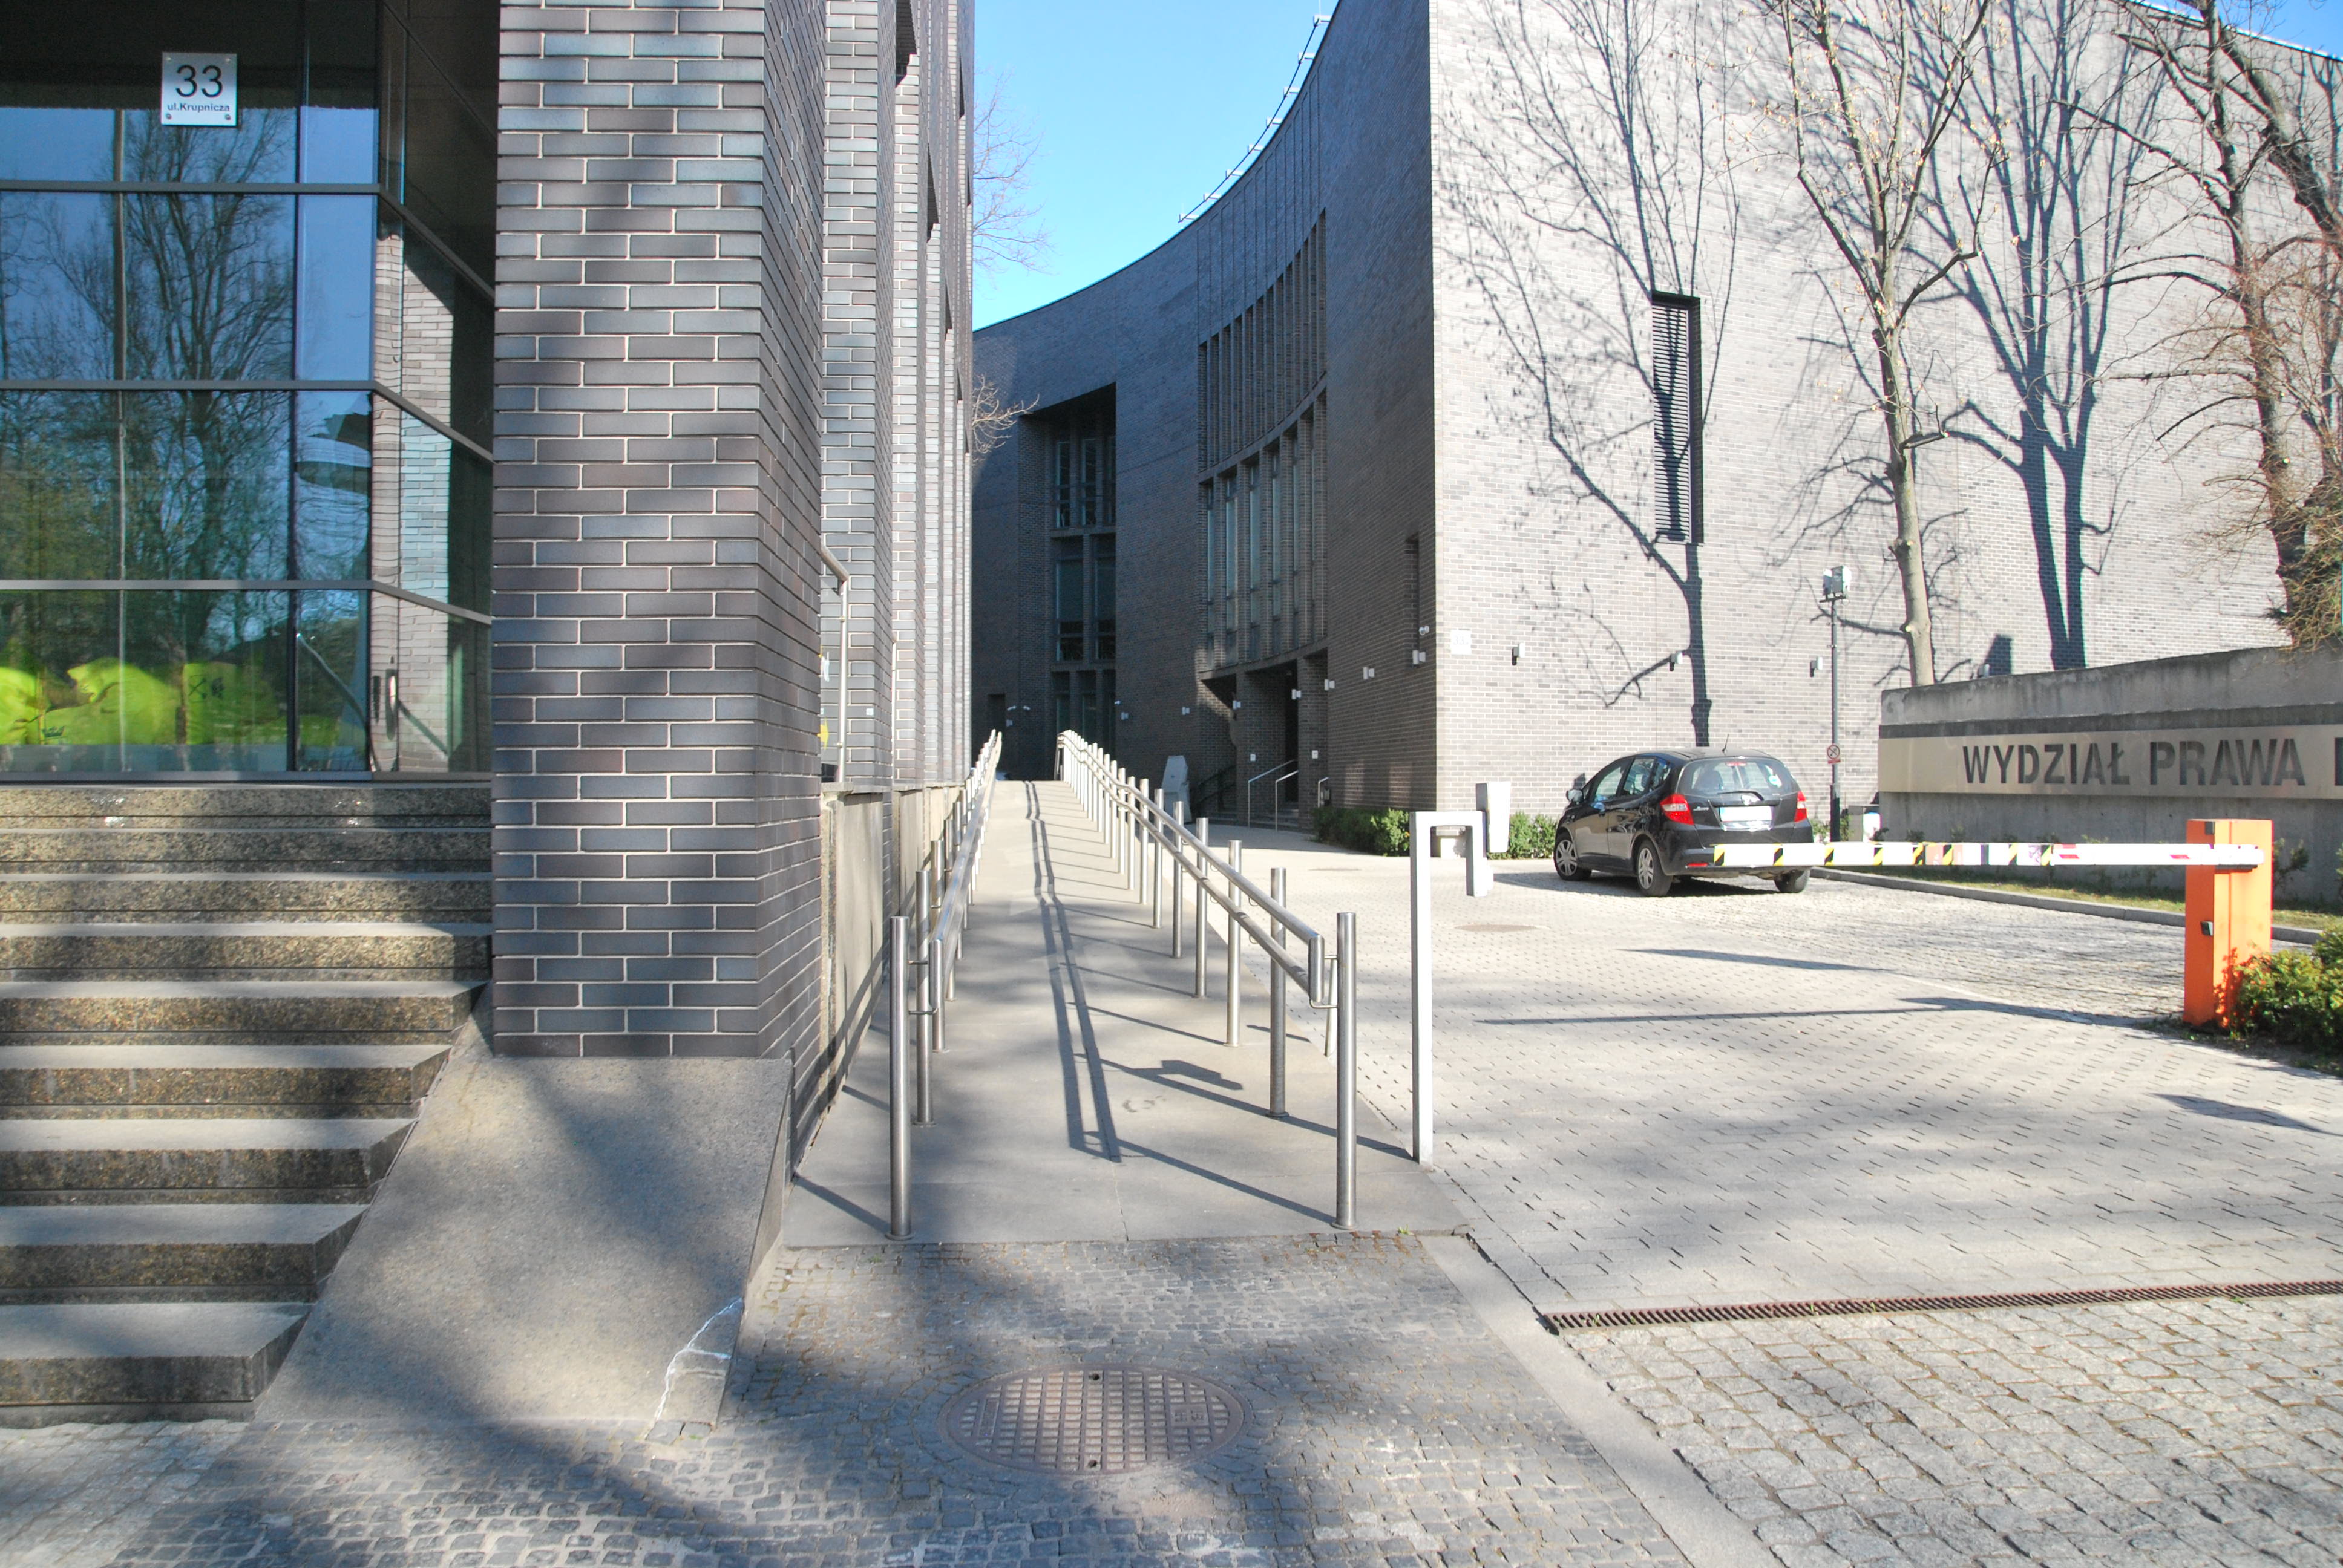 Na środku znajduje się podjazd dla osób poruszających się na wózkach. Po lewej stronie widoczne są schody prowadzące do Auditorium Maximum. Po lewej znajduje się budynek Wydziału Prawa i Administracji UJ, wjazd na wewnętrzny parking możliwy jest po minięciu znajdującej się na pierwszym planie rampy.